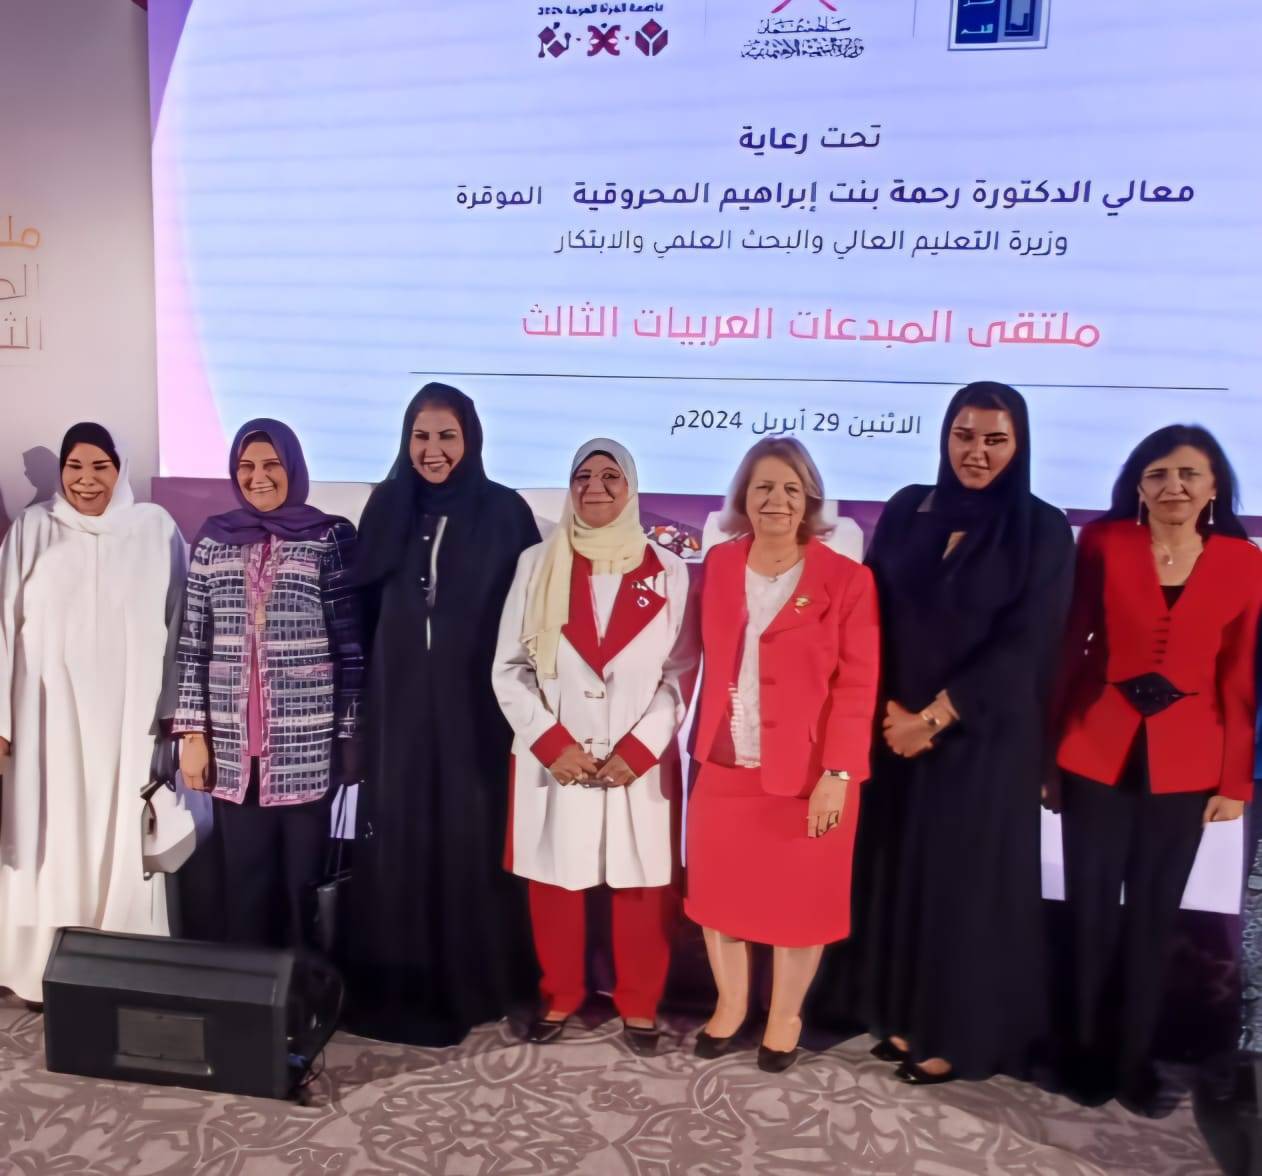 ملتقى المبدعات العربيات الثالث في سلطنة عمان بالتعاون مع وزارة التنمية الإجتماعية